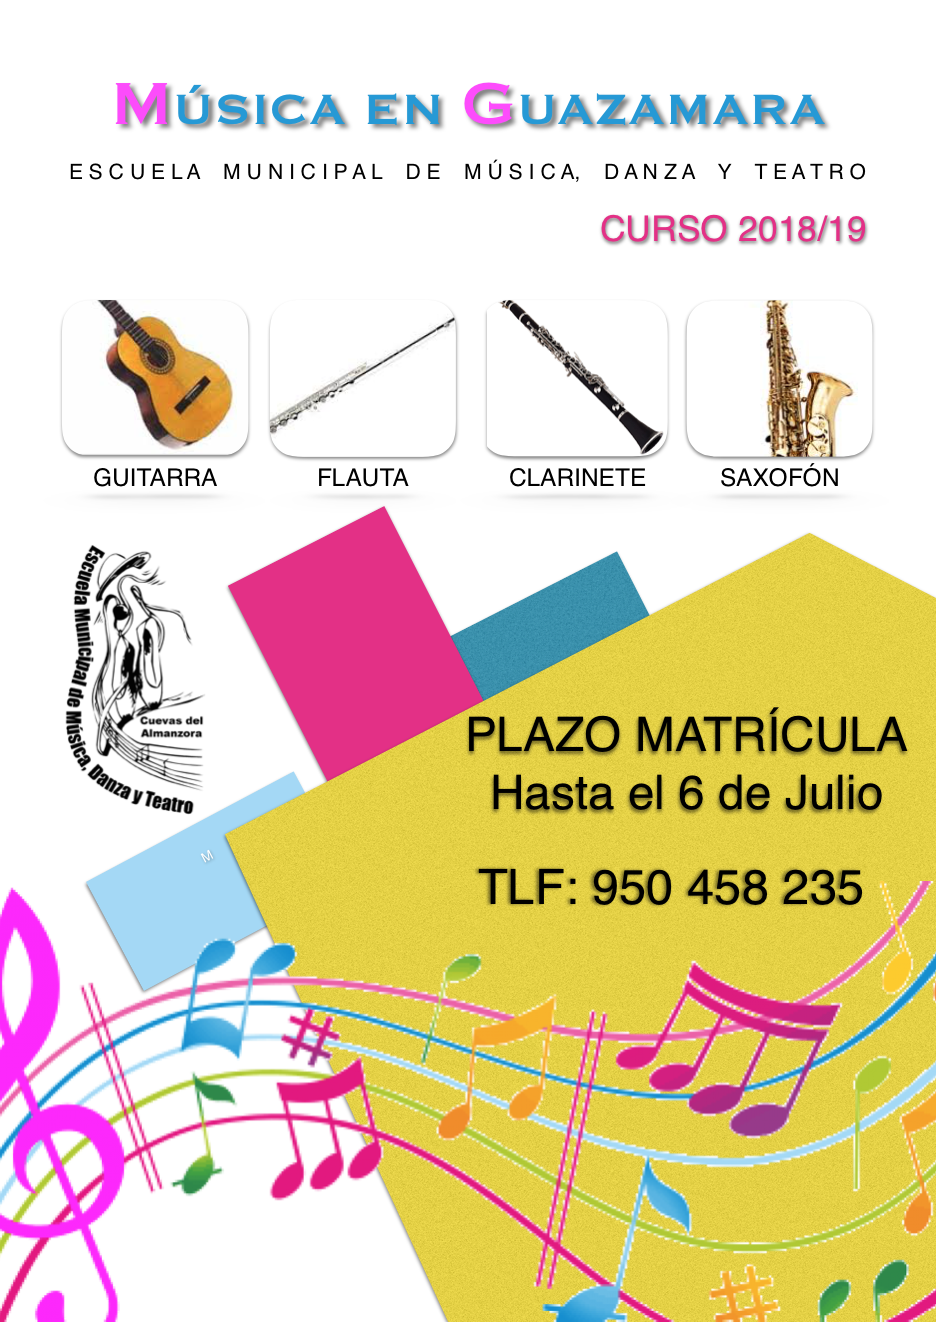 Musica en Guazamara